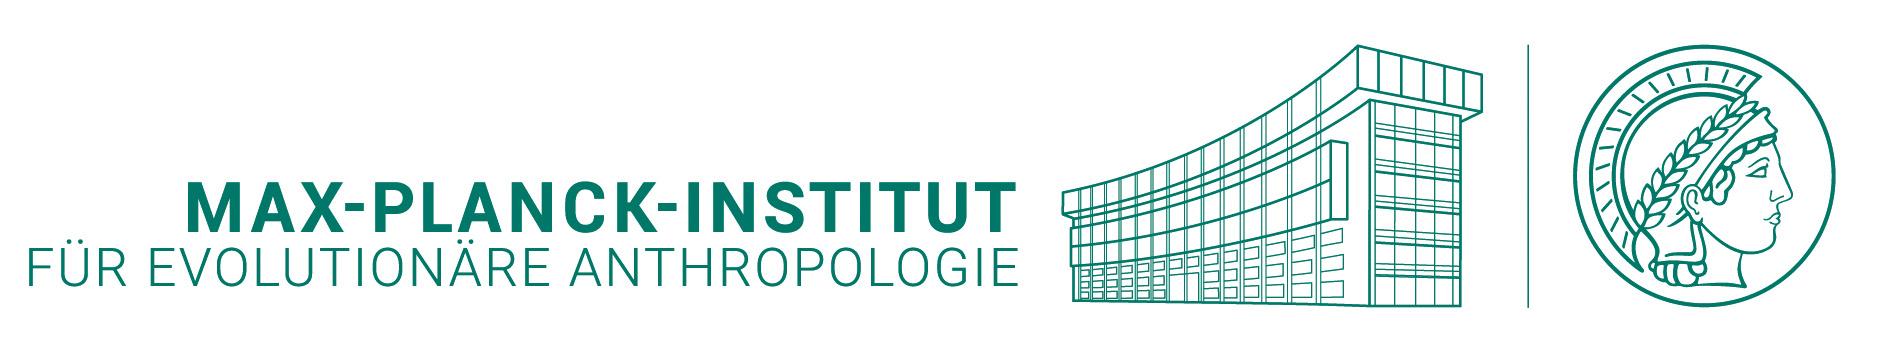 Logo: Max-Planck-Institut für evolutionäre Anthropologie